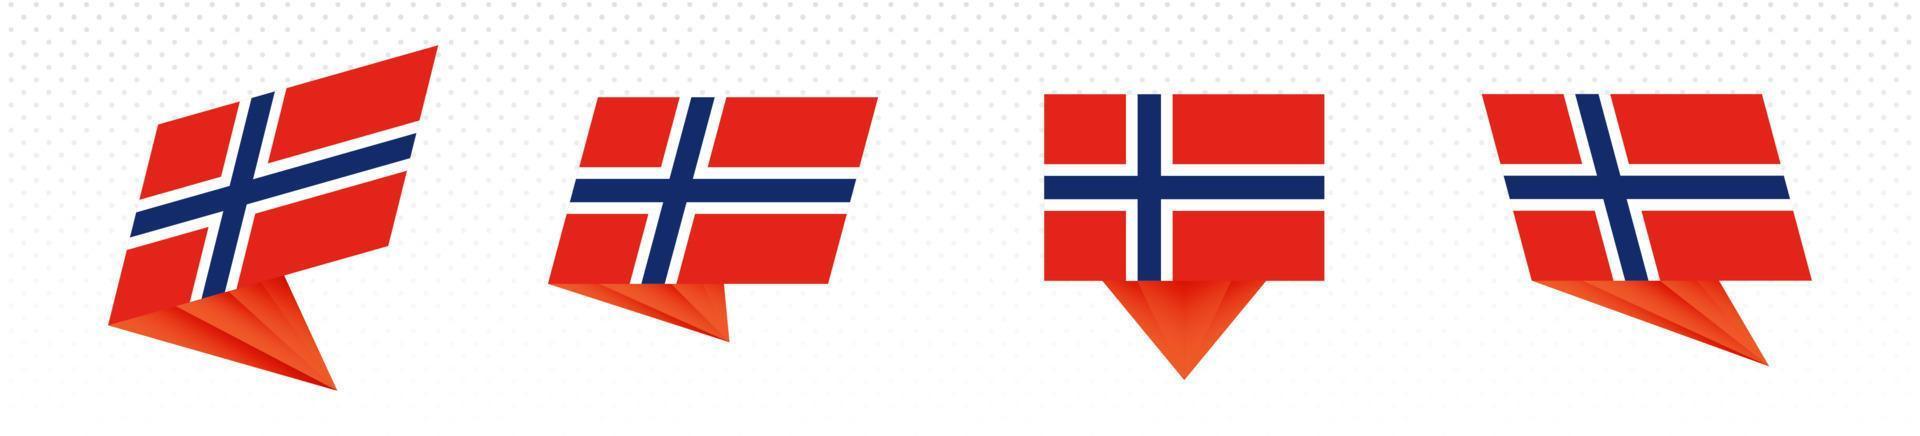 bandera de noruega en diseño abstracto moderno, juego de banderas. vector